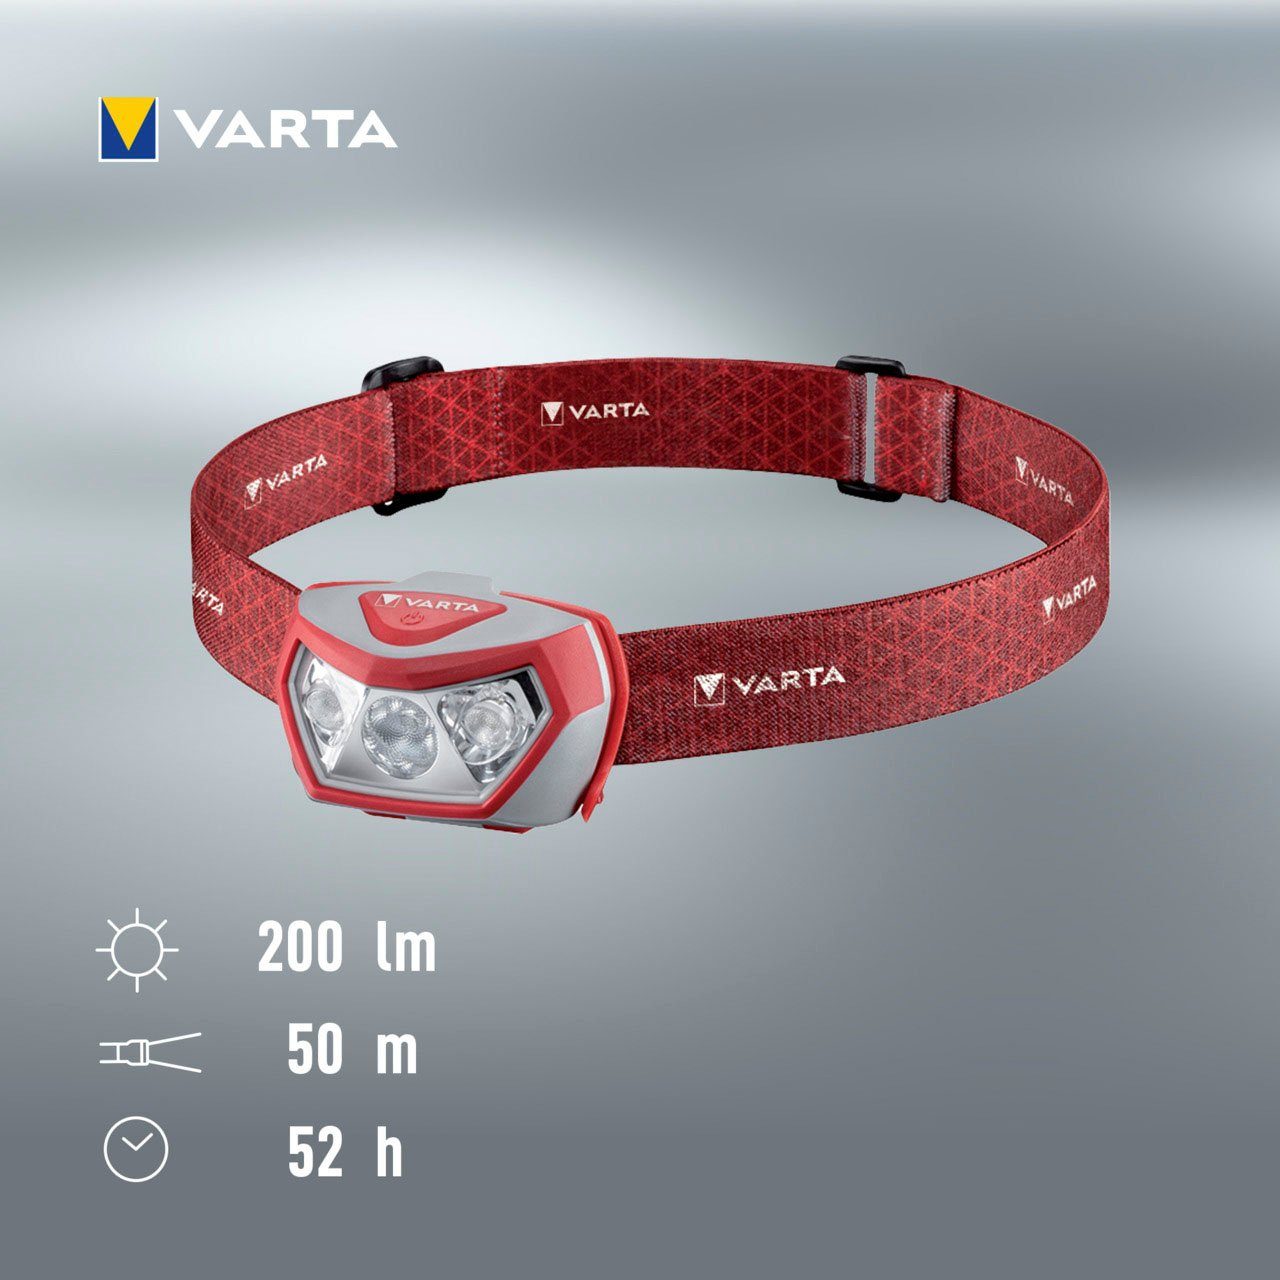 3xAAA H20 inkl. Batterien Pro Outdoor VARTA VARTA Kopflampe Sports